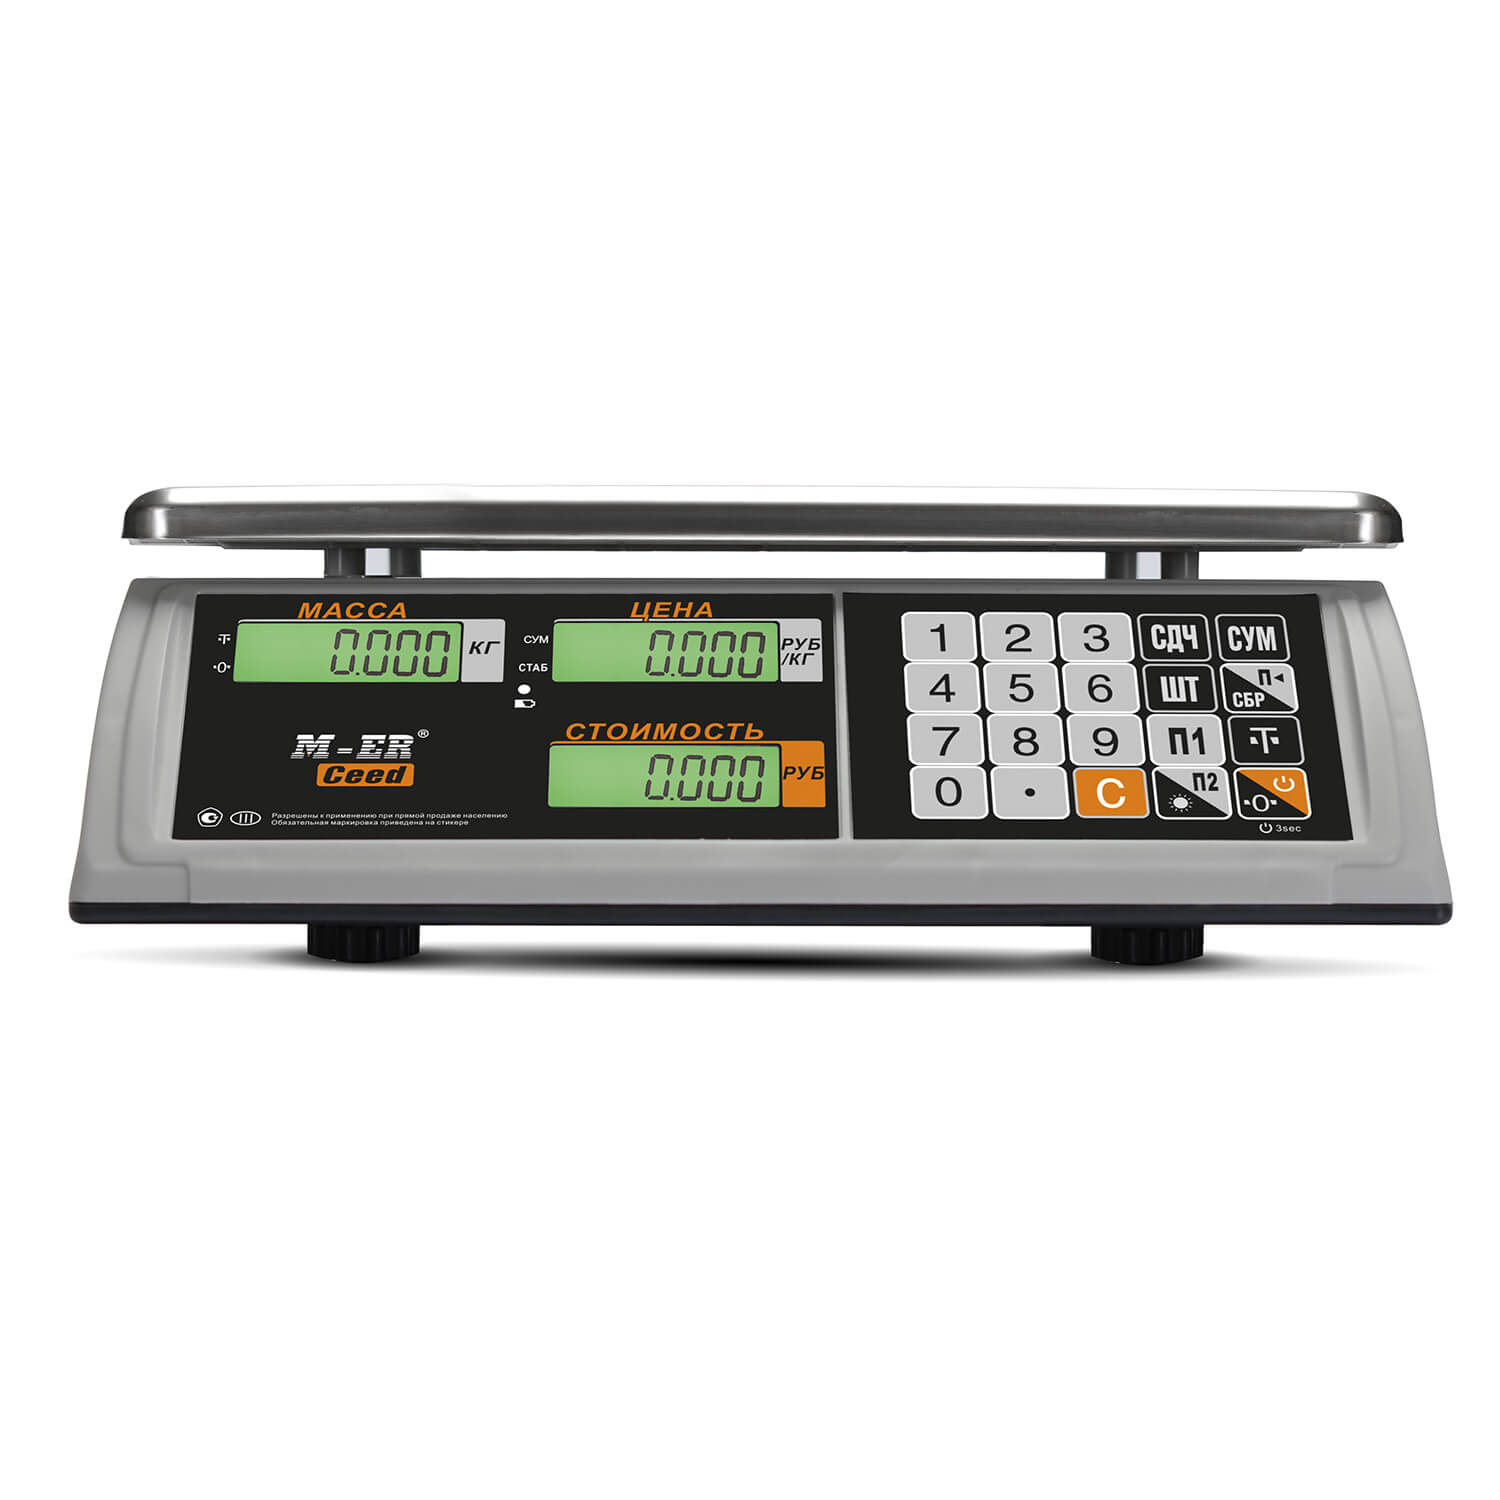 Торговые настольные весы M-ER 327 AC-15.2 "Ceed" LCD (3017)